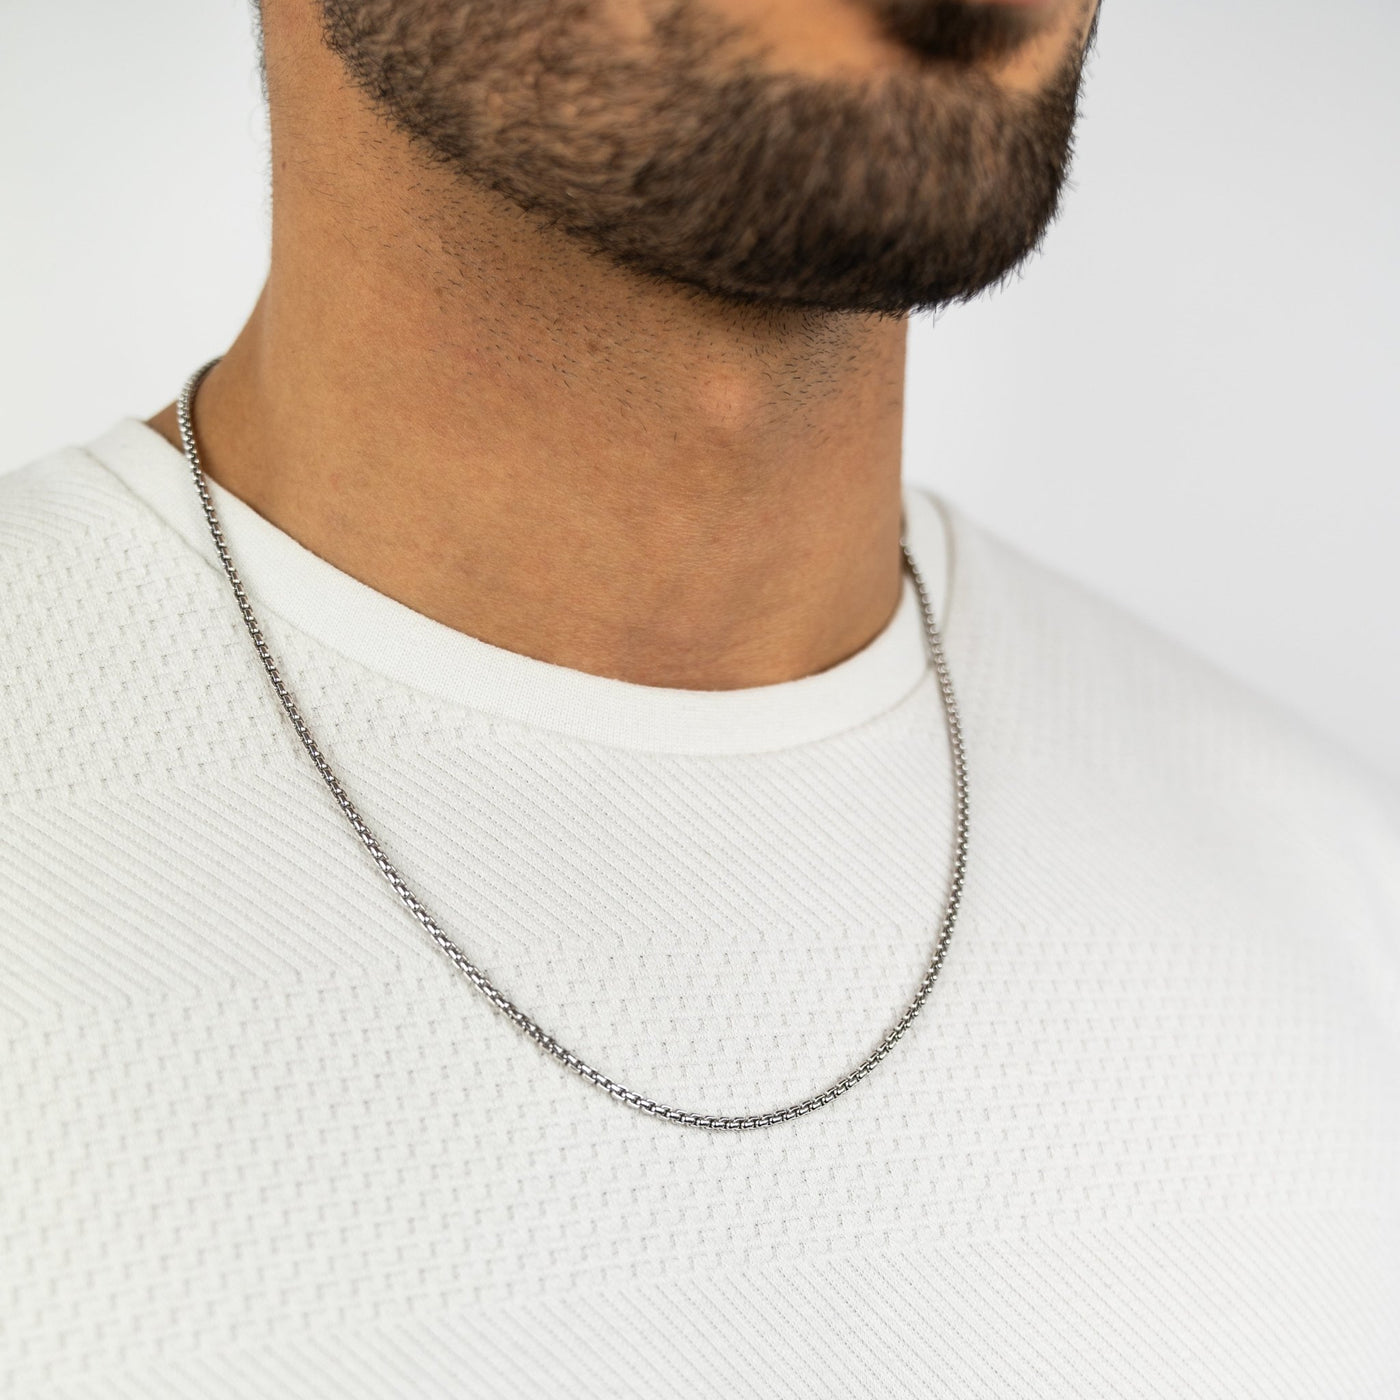 IDENTIM® Herren Halskette Venezianerkette Rund Herrenkette Silberkette  2.70mm 925 Silber Rhodiniert